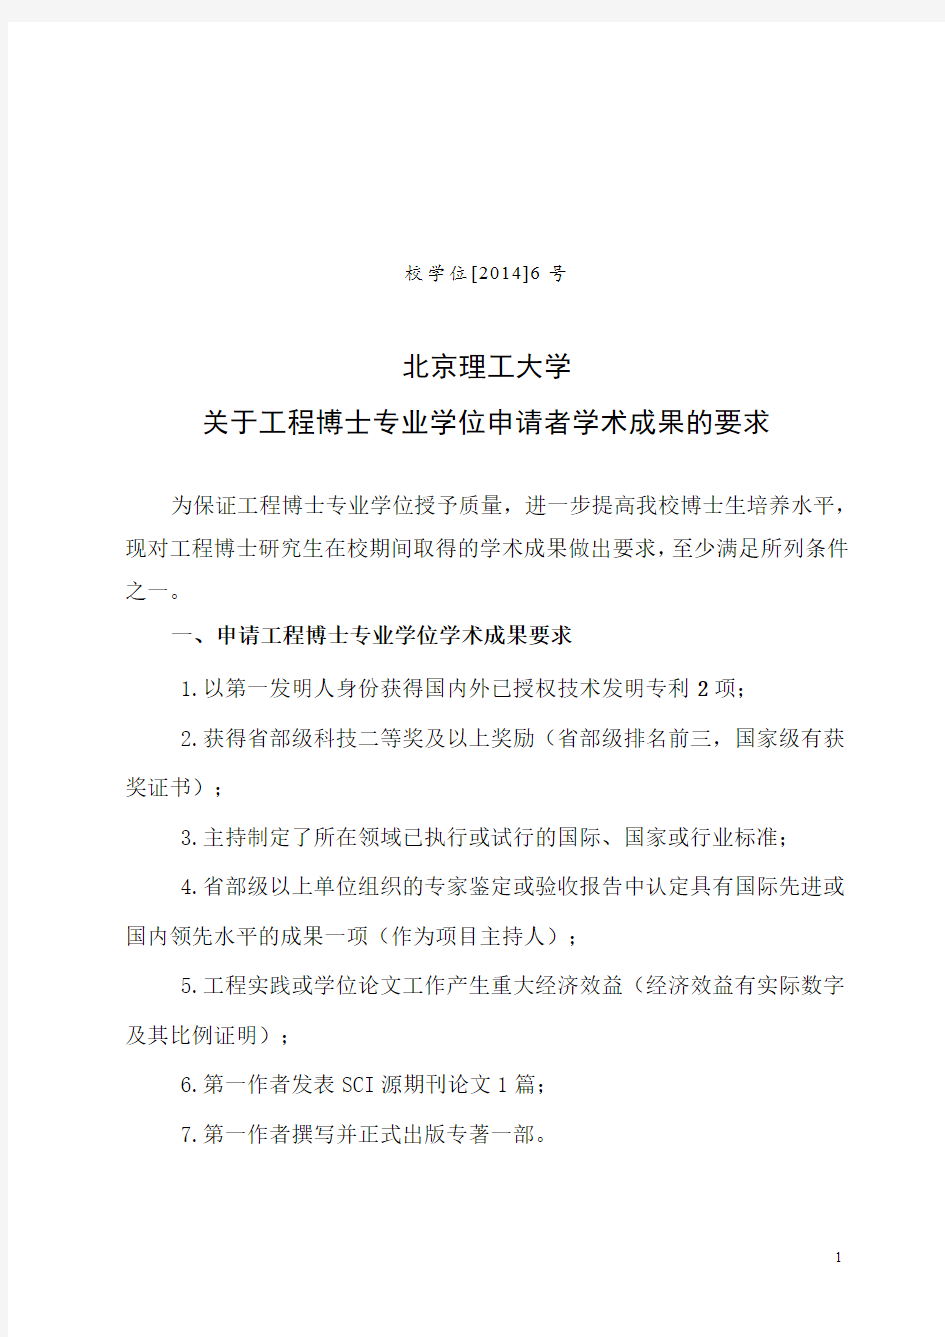 北京理工大学关于工程博士专业学位申请者学术成果的要求